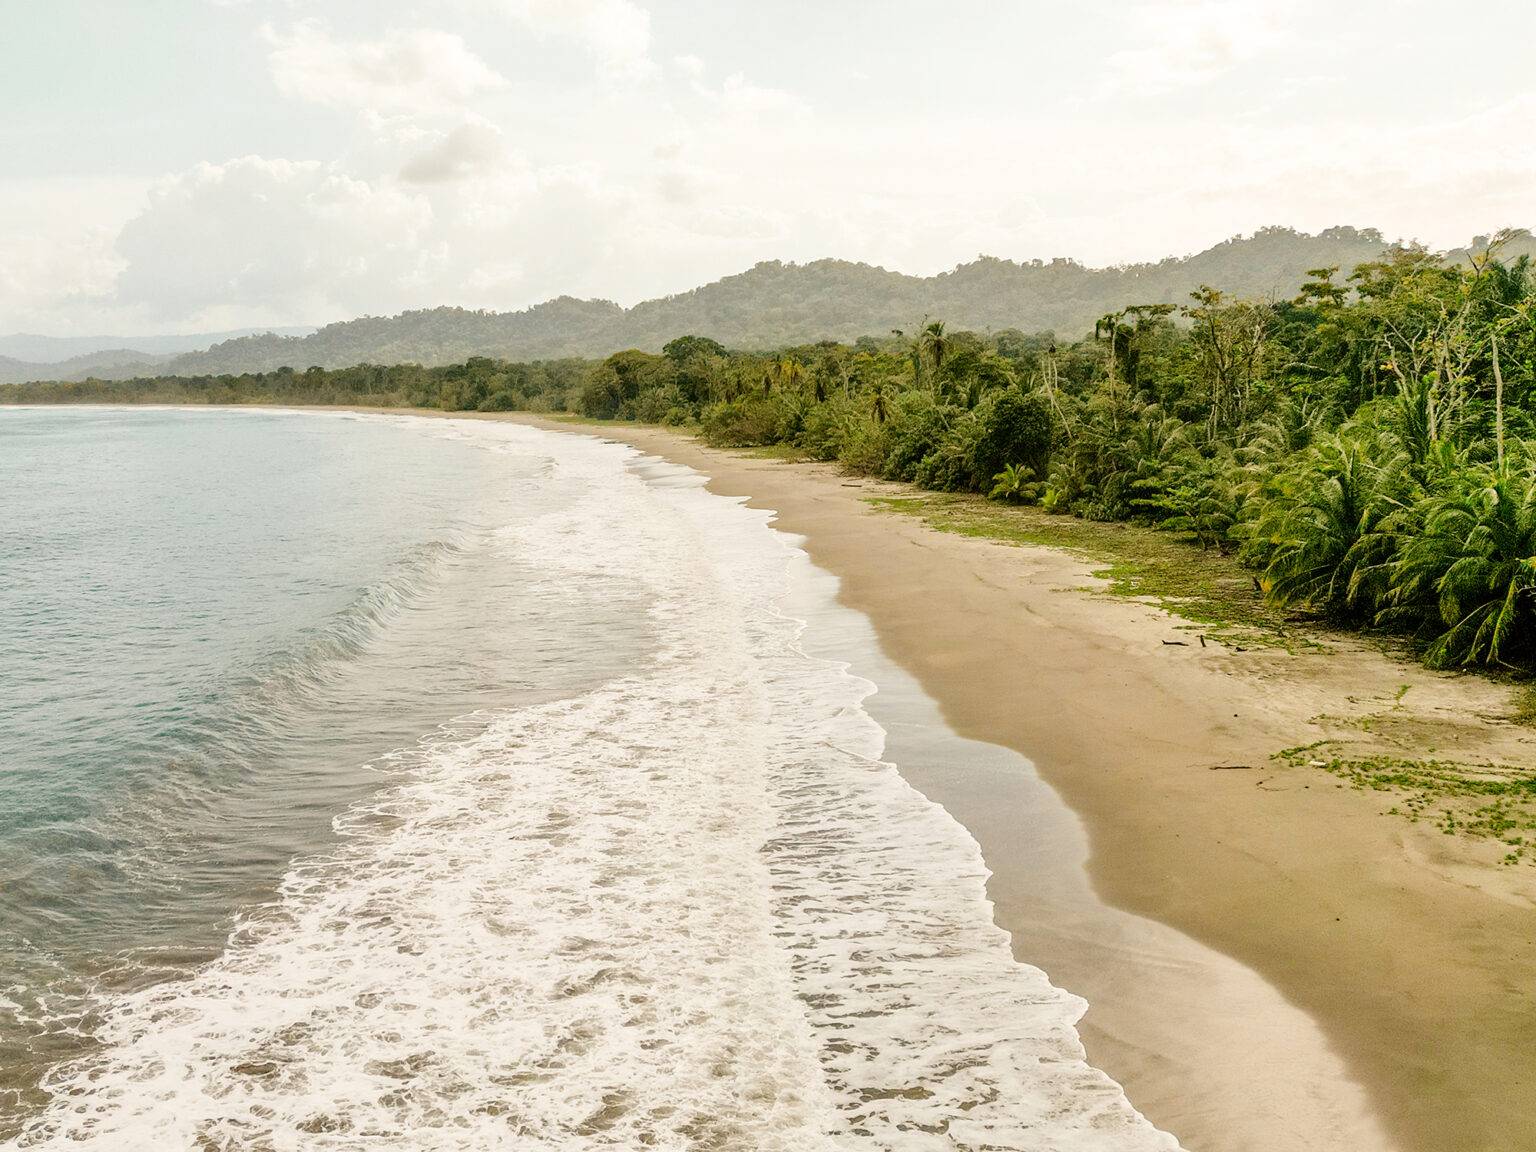 Der Puerto Vargas Strand im Cahuita Nationalpark ist extrem lang und breit. Durch die mächtigen Wellen ist er weniger geeignet zum Baden, sondern eher für einen Spaziergang.